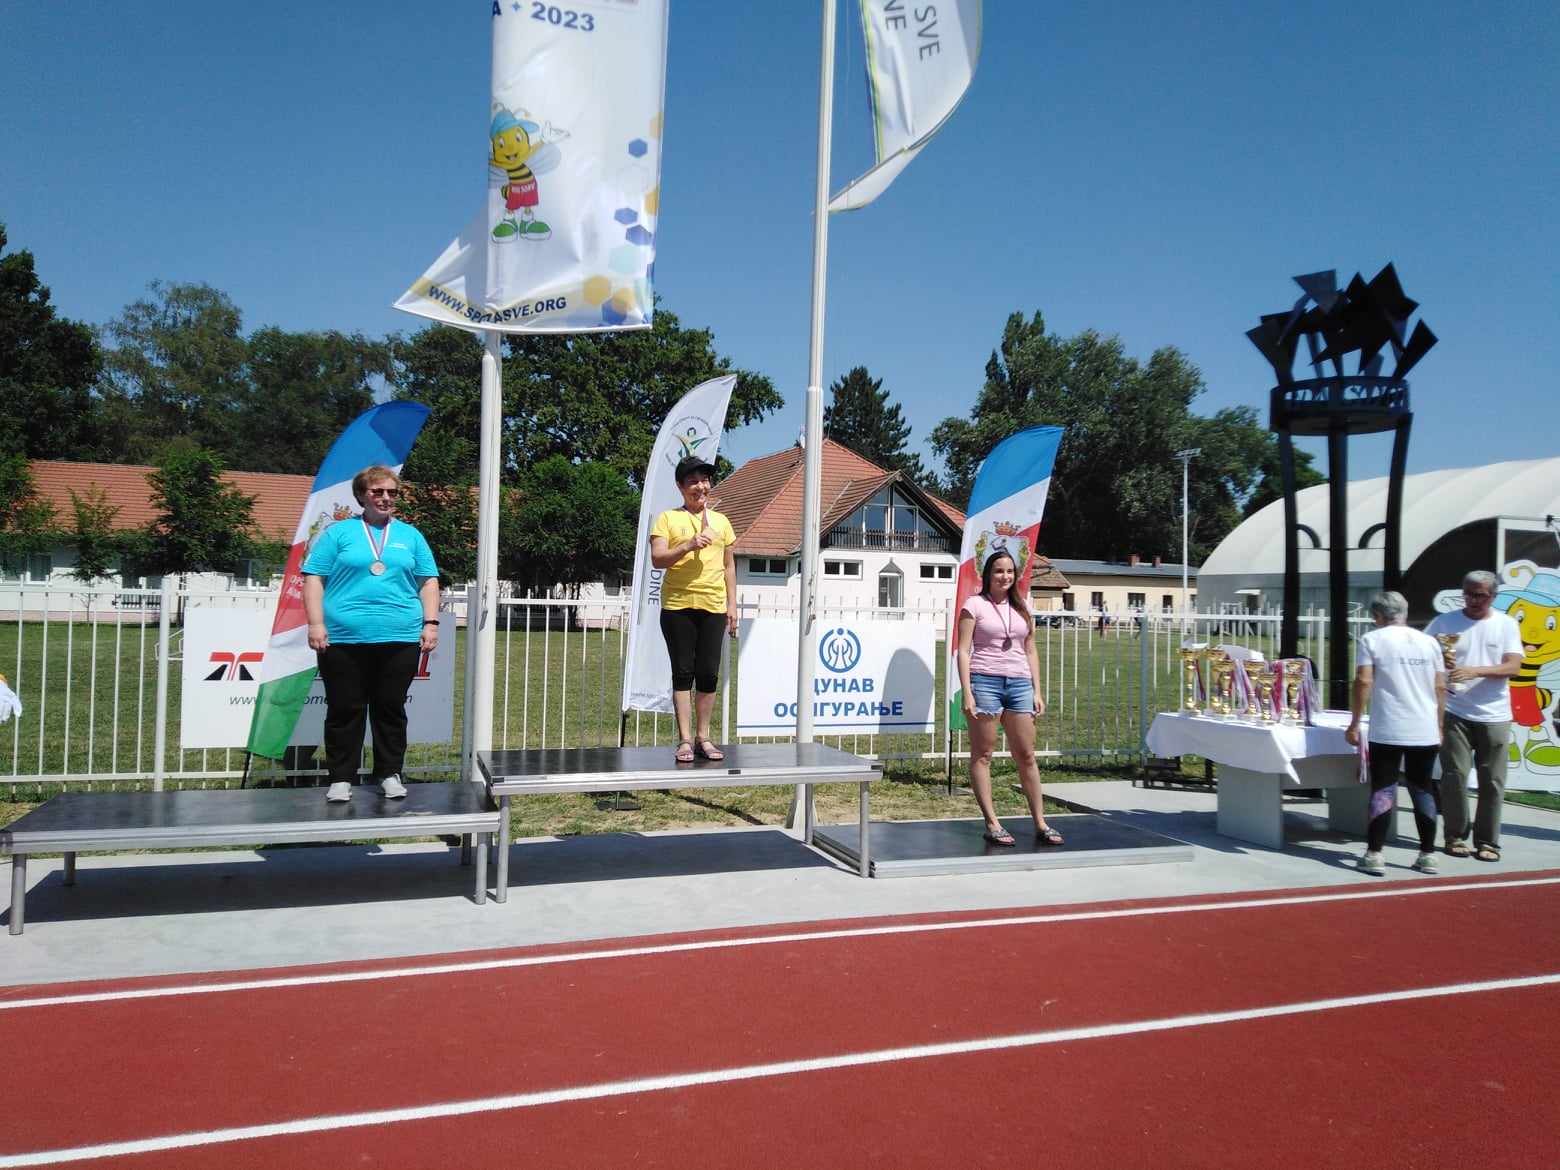 Subotičani uspešni na 13. Sportskoj olimpijadi radnika Vojvodine (FOTO)